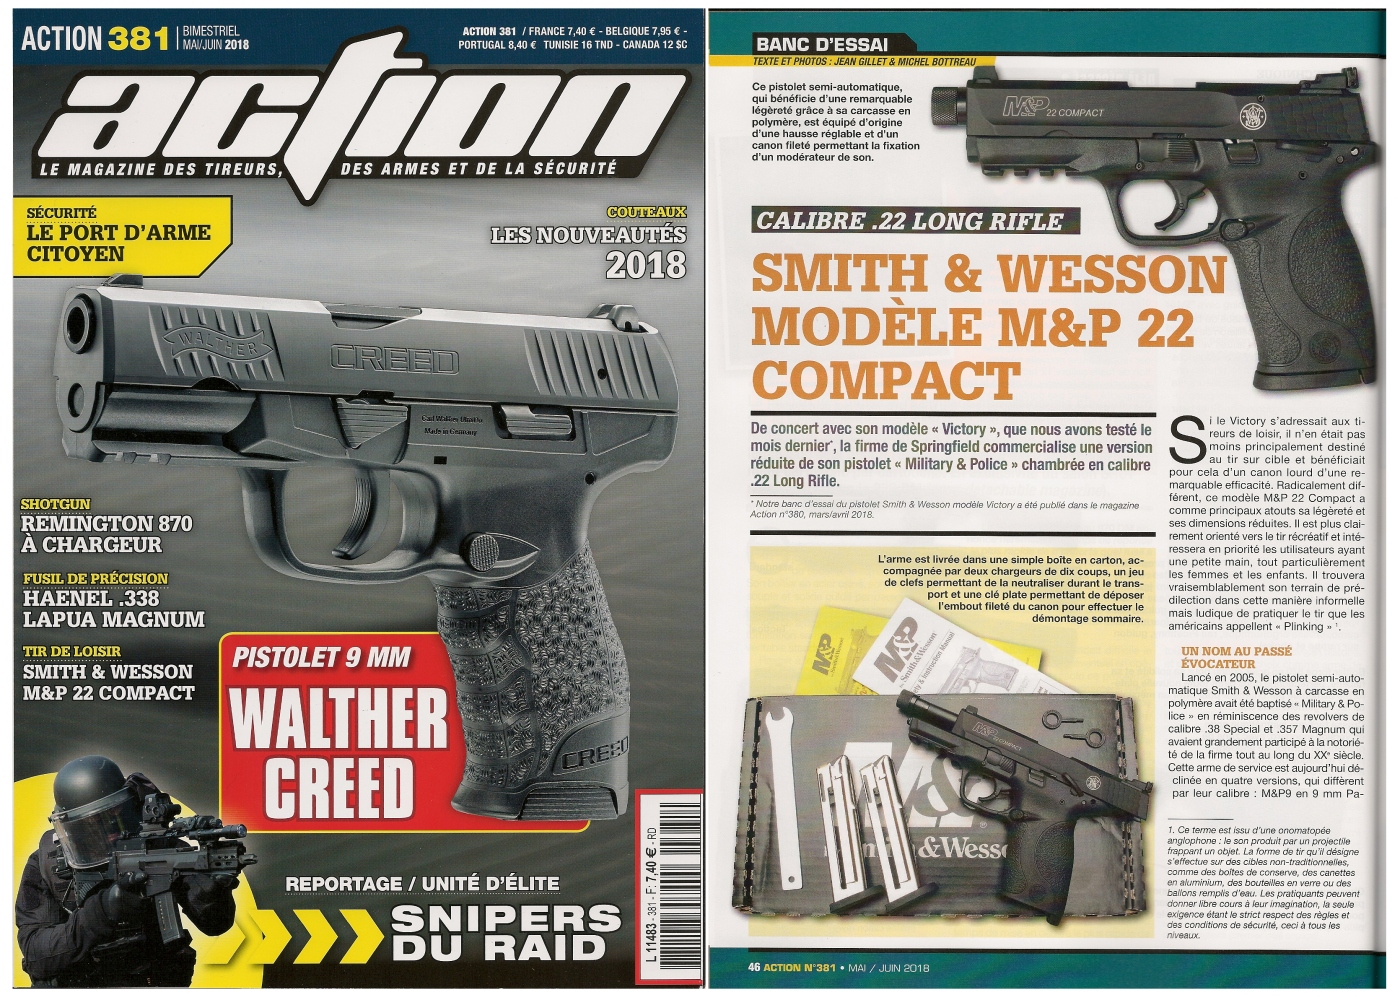 Le banc d’essai du pistolet S&W M&P 22 Compact a été publié sur 5 pages dans le magazine Action n° 381 (mai/juin 2018). 